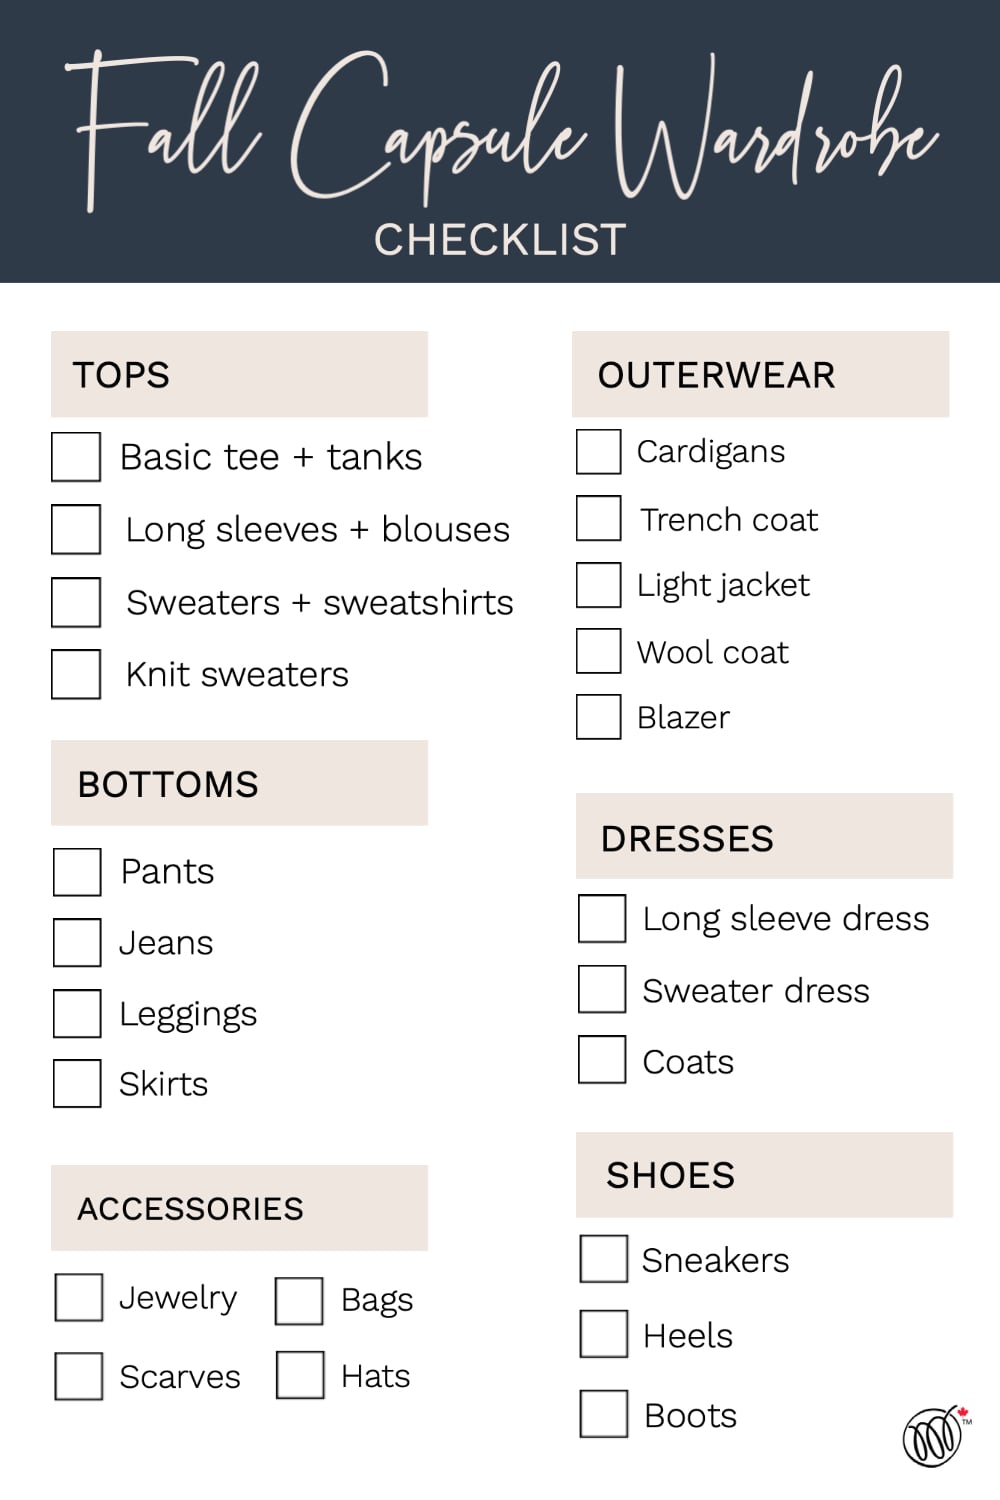 Fall capsule wardrobe checklist 2022